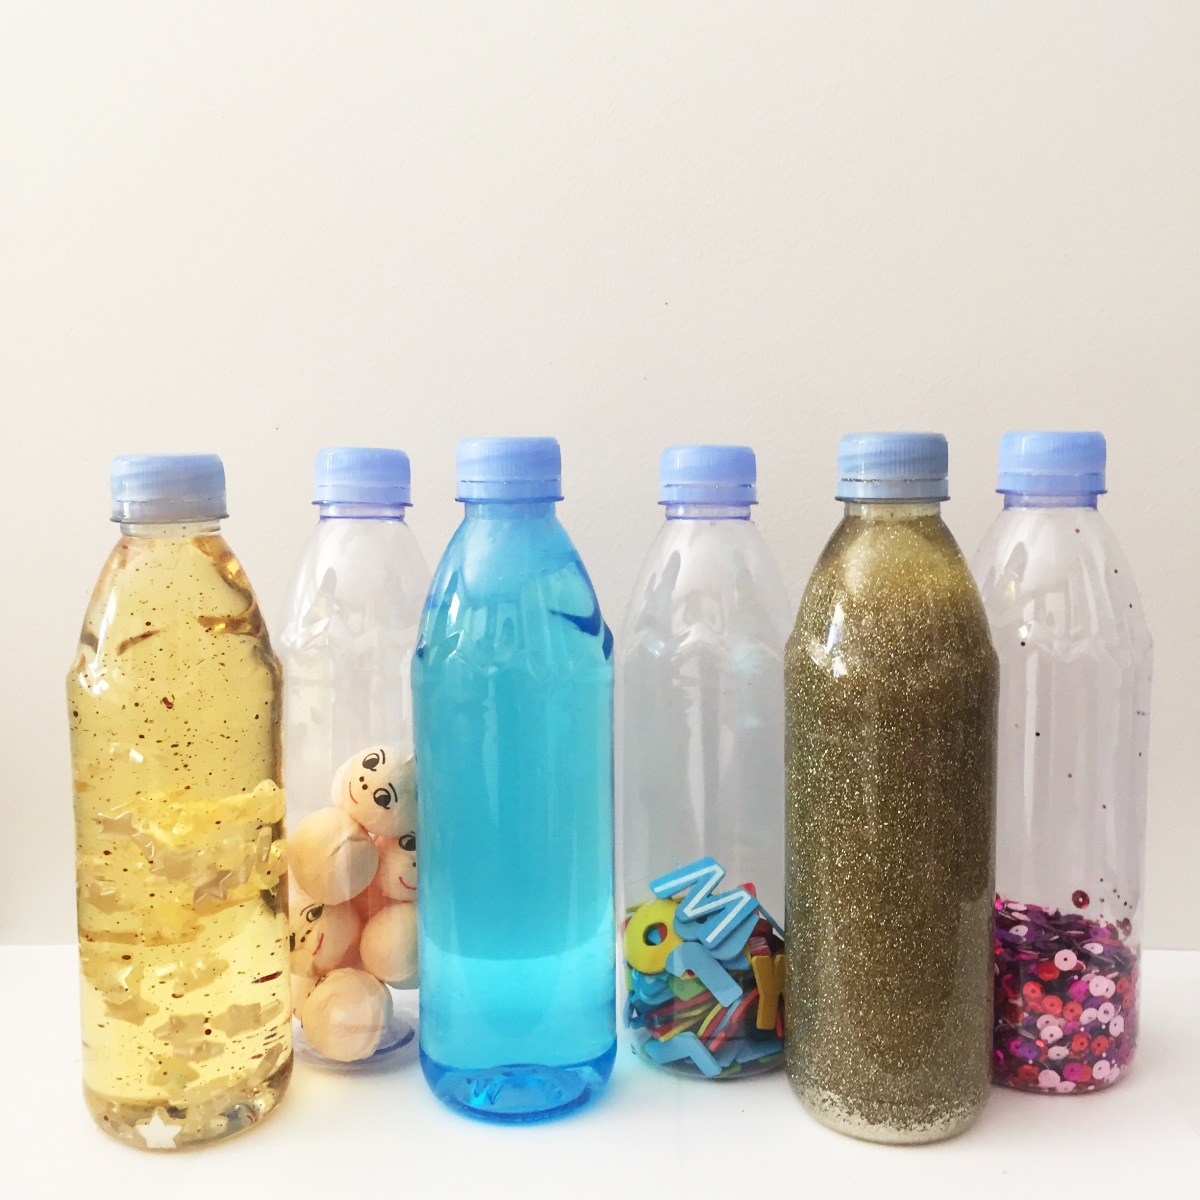 Comment faire une bouteille sensorielle Montessori ? - Marie Claire